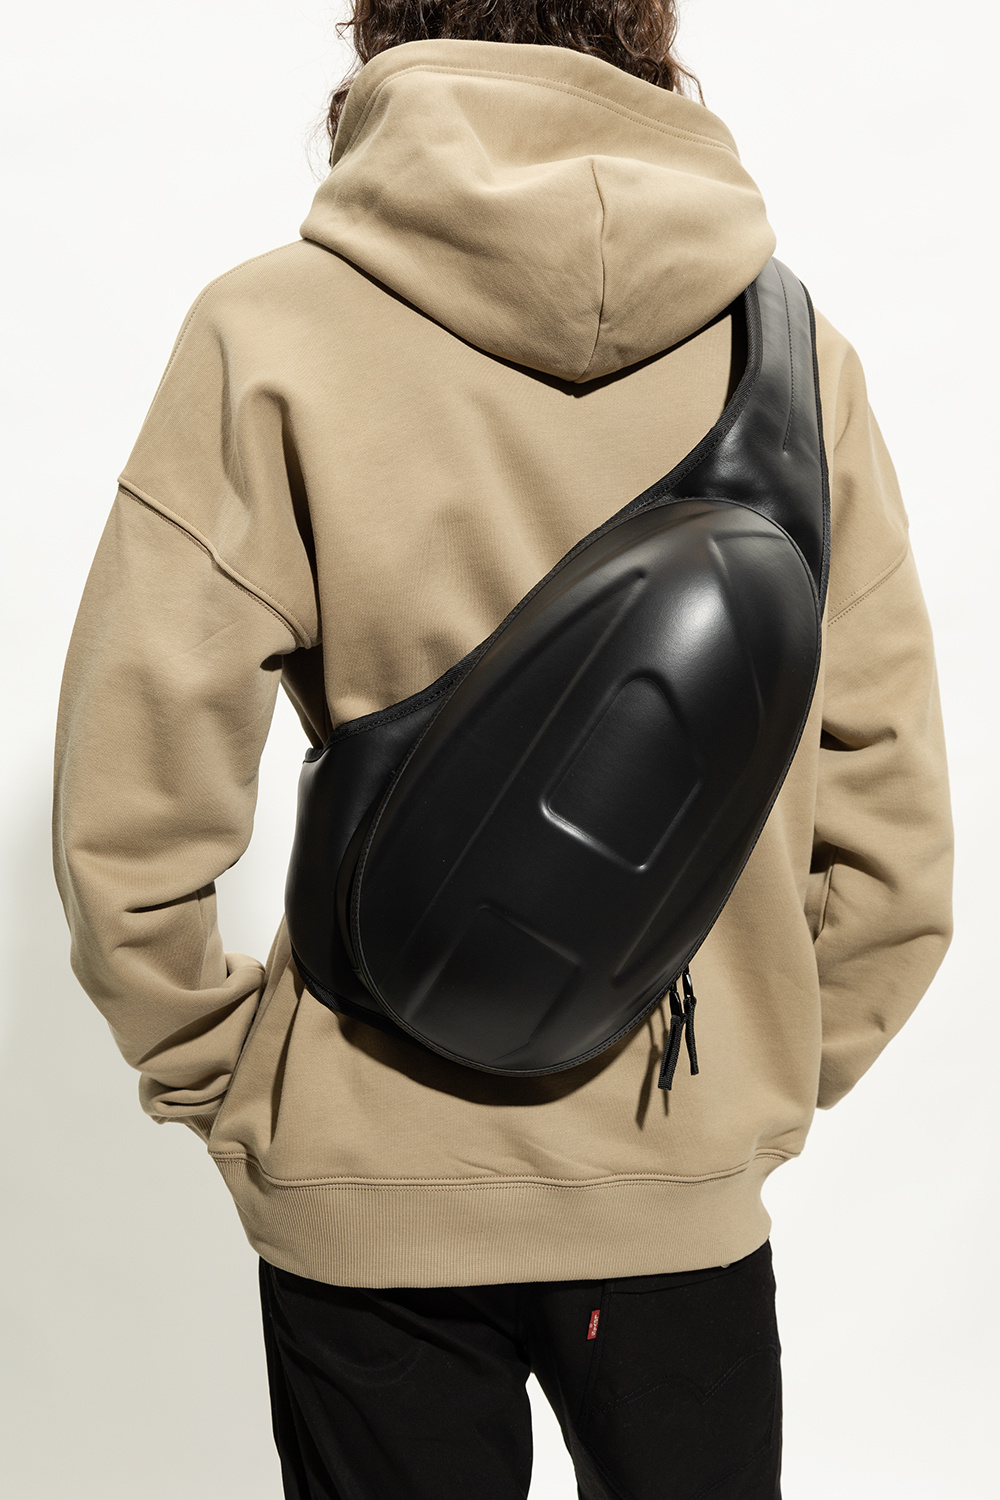 Black ‘1DR-POD’ one-shoulder backpack Diesel - Vitkac GB